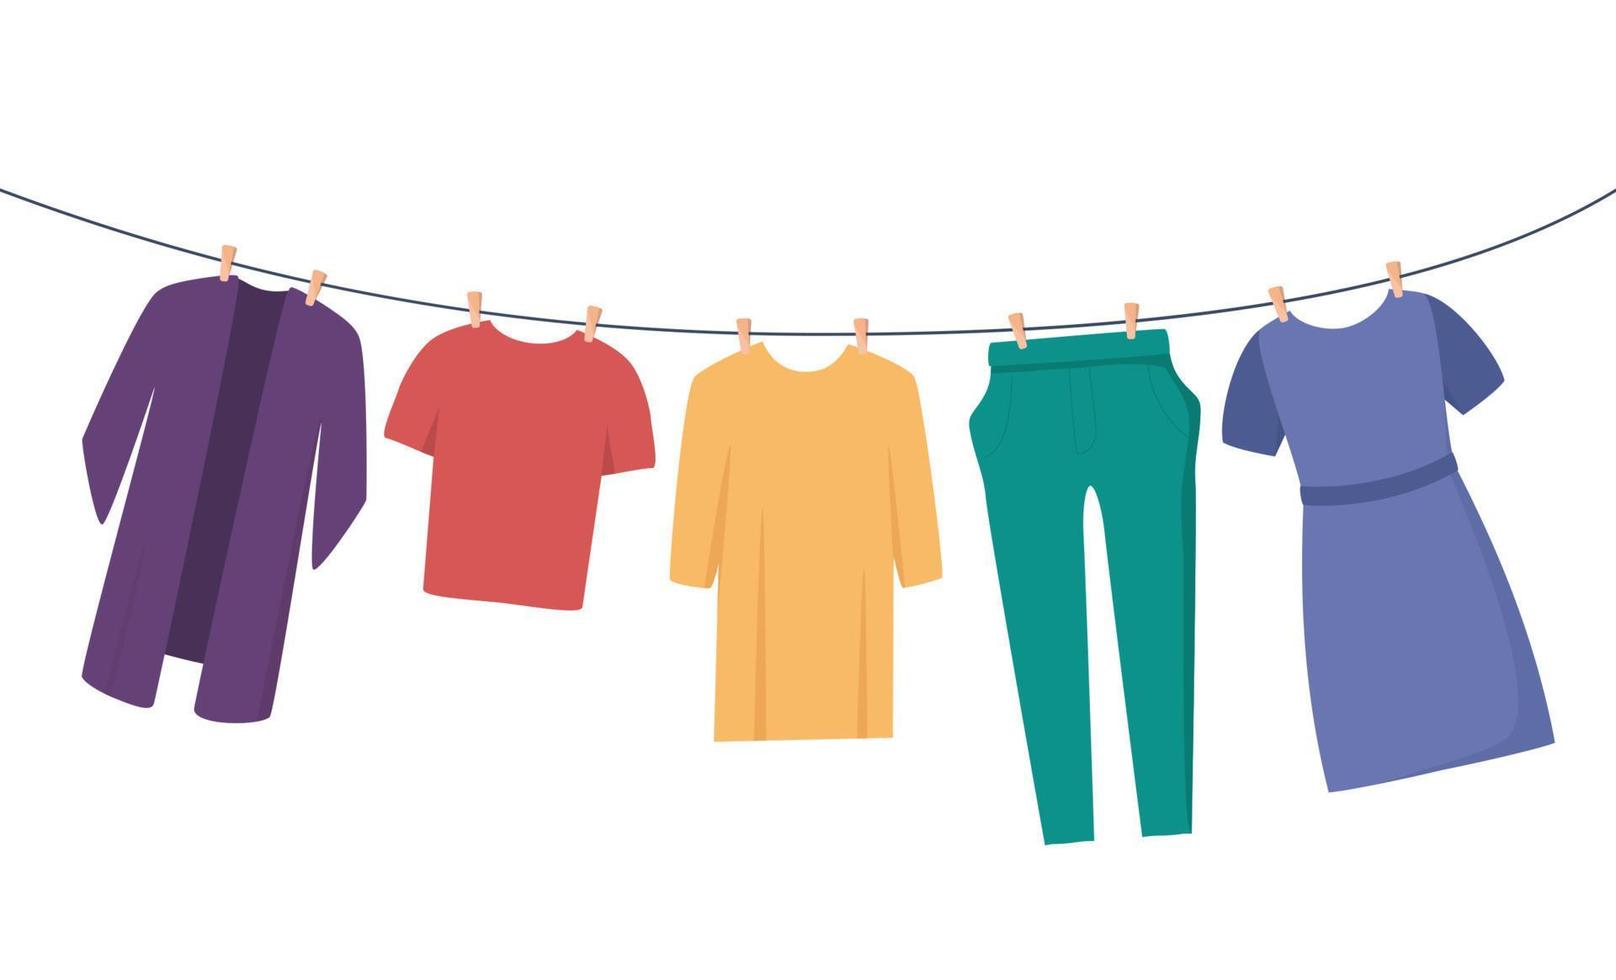 kleren Aan Kledinglijn. kleren en accessoires na het wassen Aan een touw. t-shirt, jurk, broek, blouse. vlak vector illustratie voor huishouding, netheid concept.